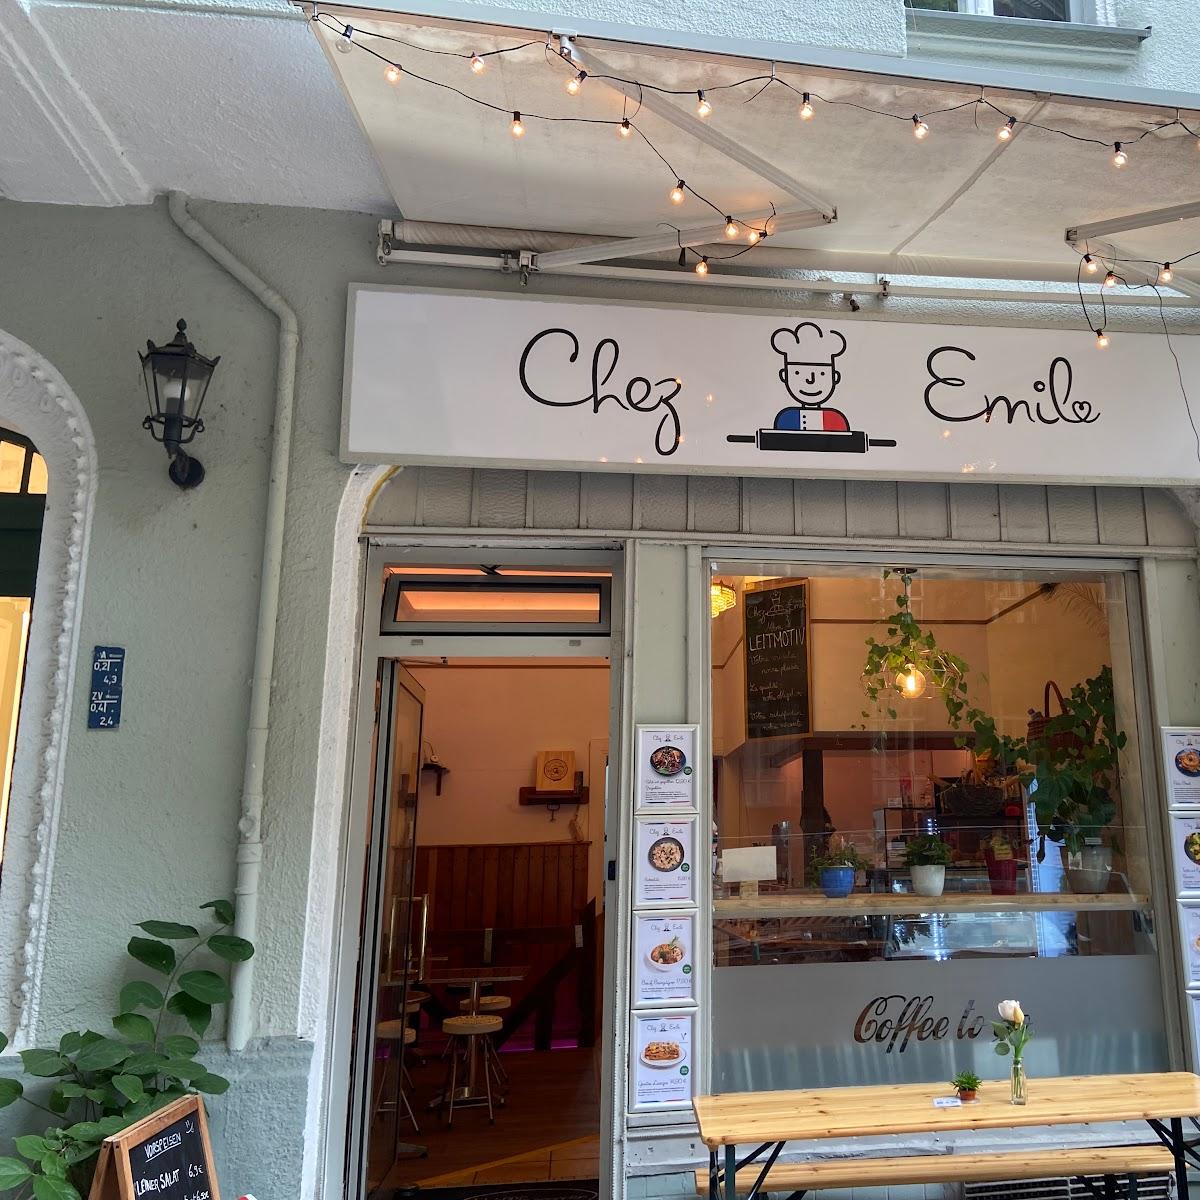 Restaurant "Chez Emil - Französisches Restaurant" in Berlin